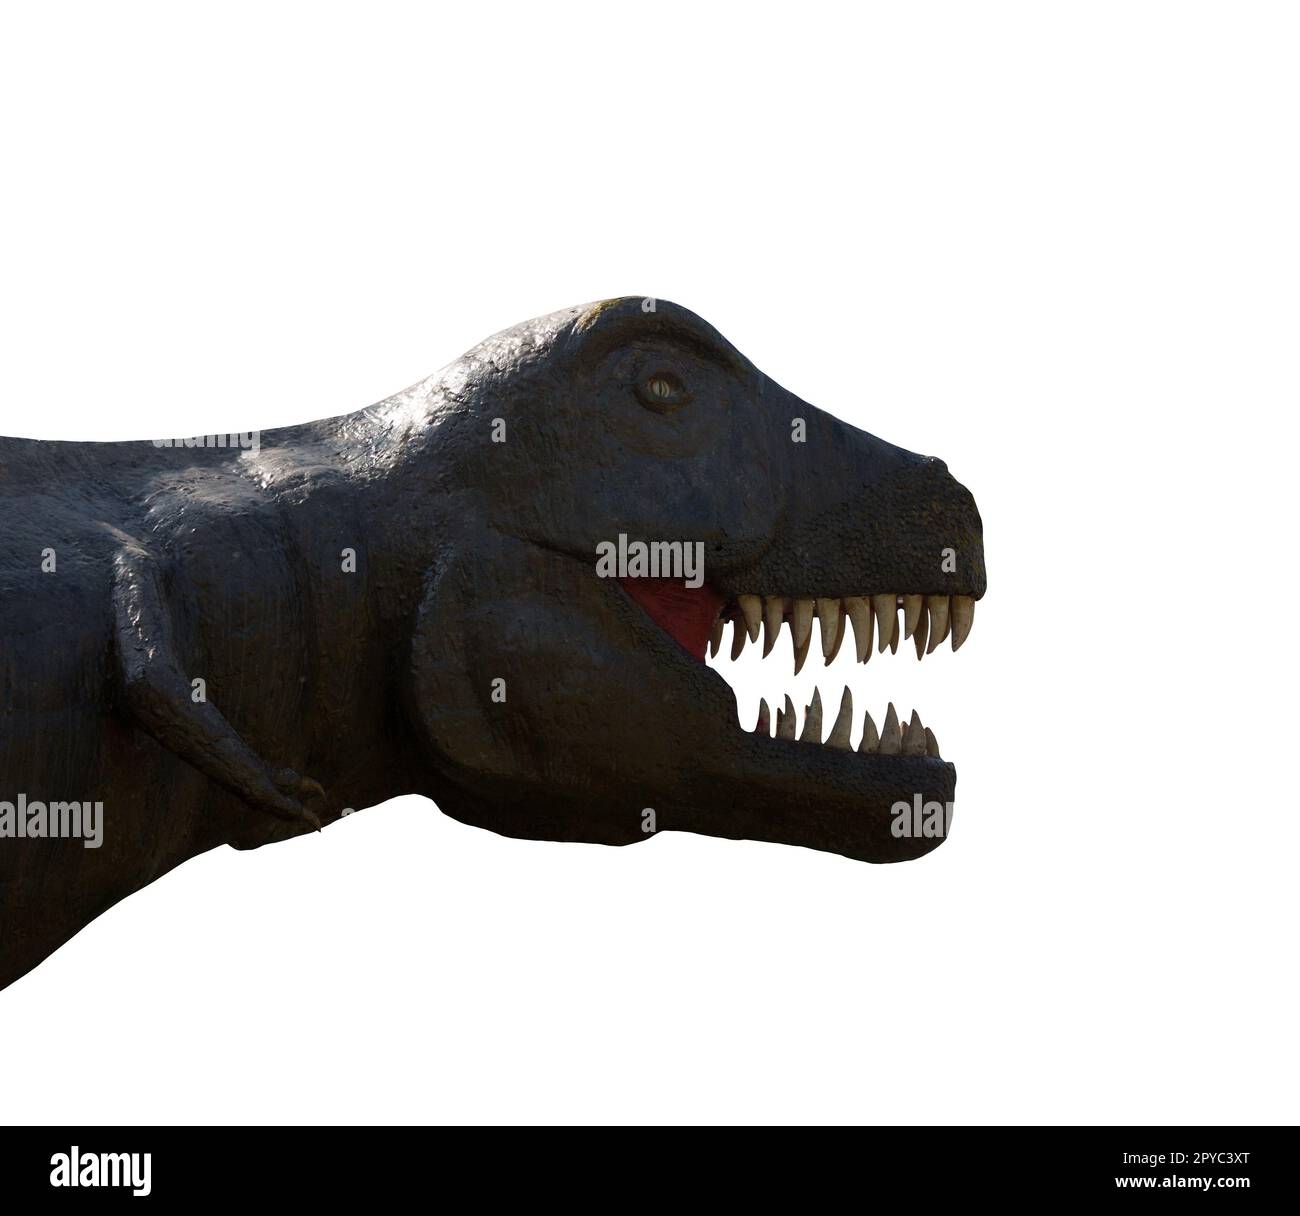 Isolierter grosser prähistorischer Tyrannosaurus Dinosaurier mit offenem Mund Stockfoto